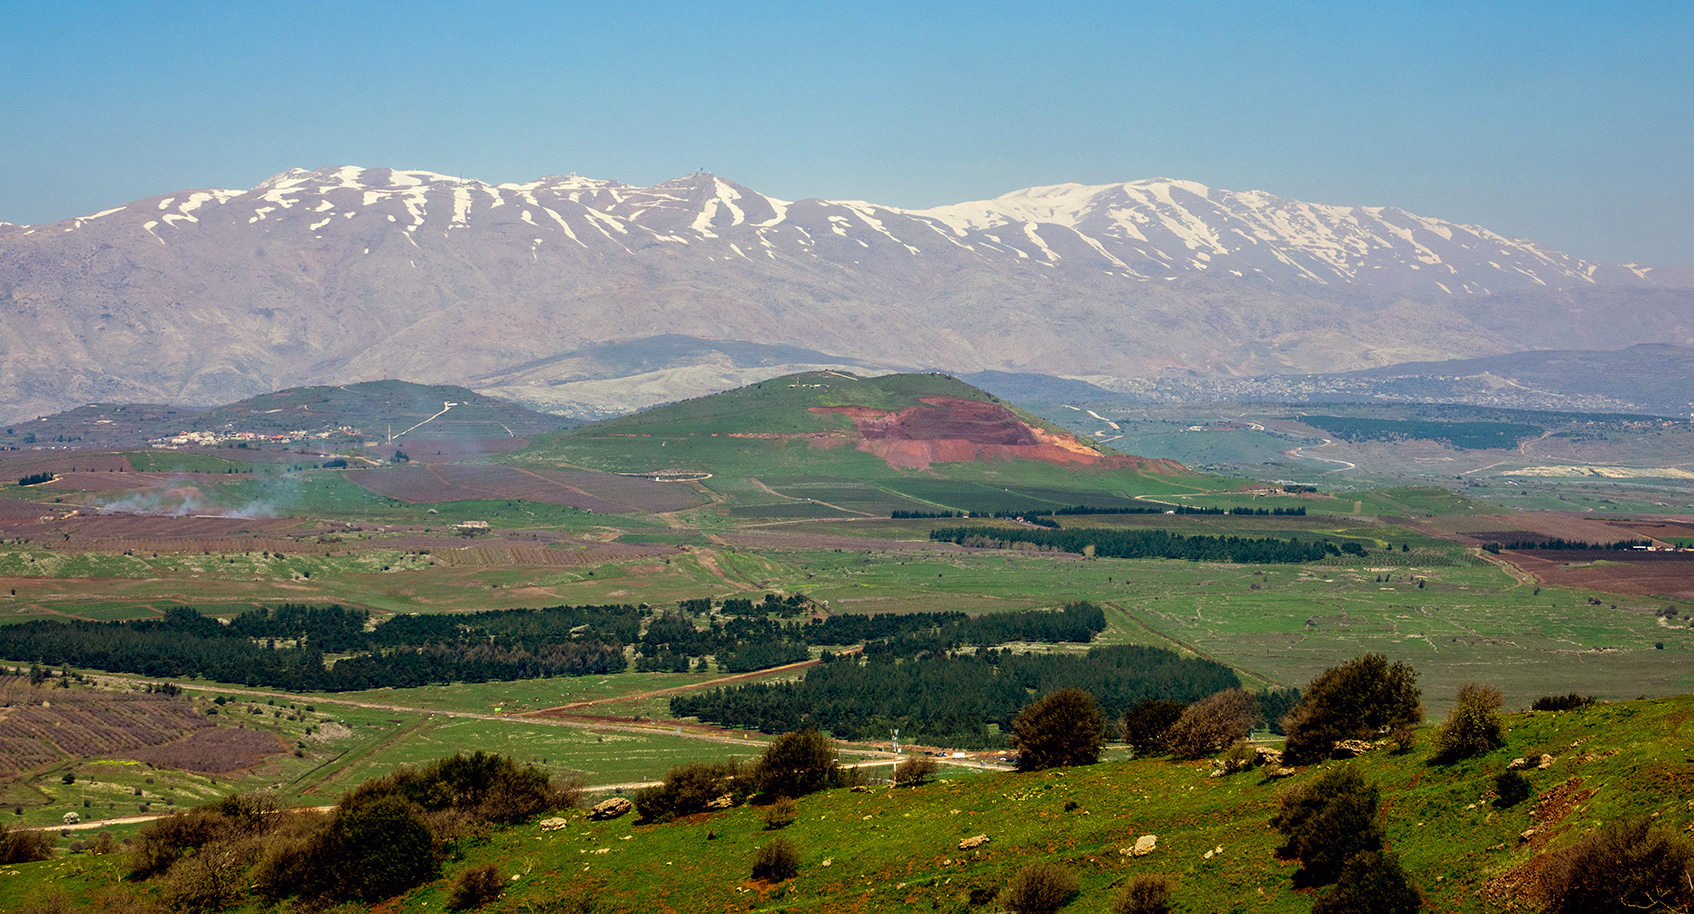 Der Berg Hermon ist die höchste Erhebung in Israel.
					Eine sichere Versorgung Israels mit Trinkwasser ist, wie bereits erwähnt, zu einem großen Teil abhängig von der Herrschaft über den Golan. Aber auch aus militärstrategischer Sicht ist der Golan unverzichtbar: Viele Israelis sind der Ansicht, dass ein israelischer Golan den Frieden sichert und berufen sich auf die über 40 Jahre, in denen der Golan von Israel besetzt wird. Seit dem Sechstagekrieg 1967 ist die Grenze mit Syrien die ruhigste Grenze Israels.
				